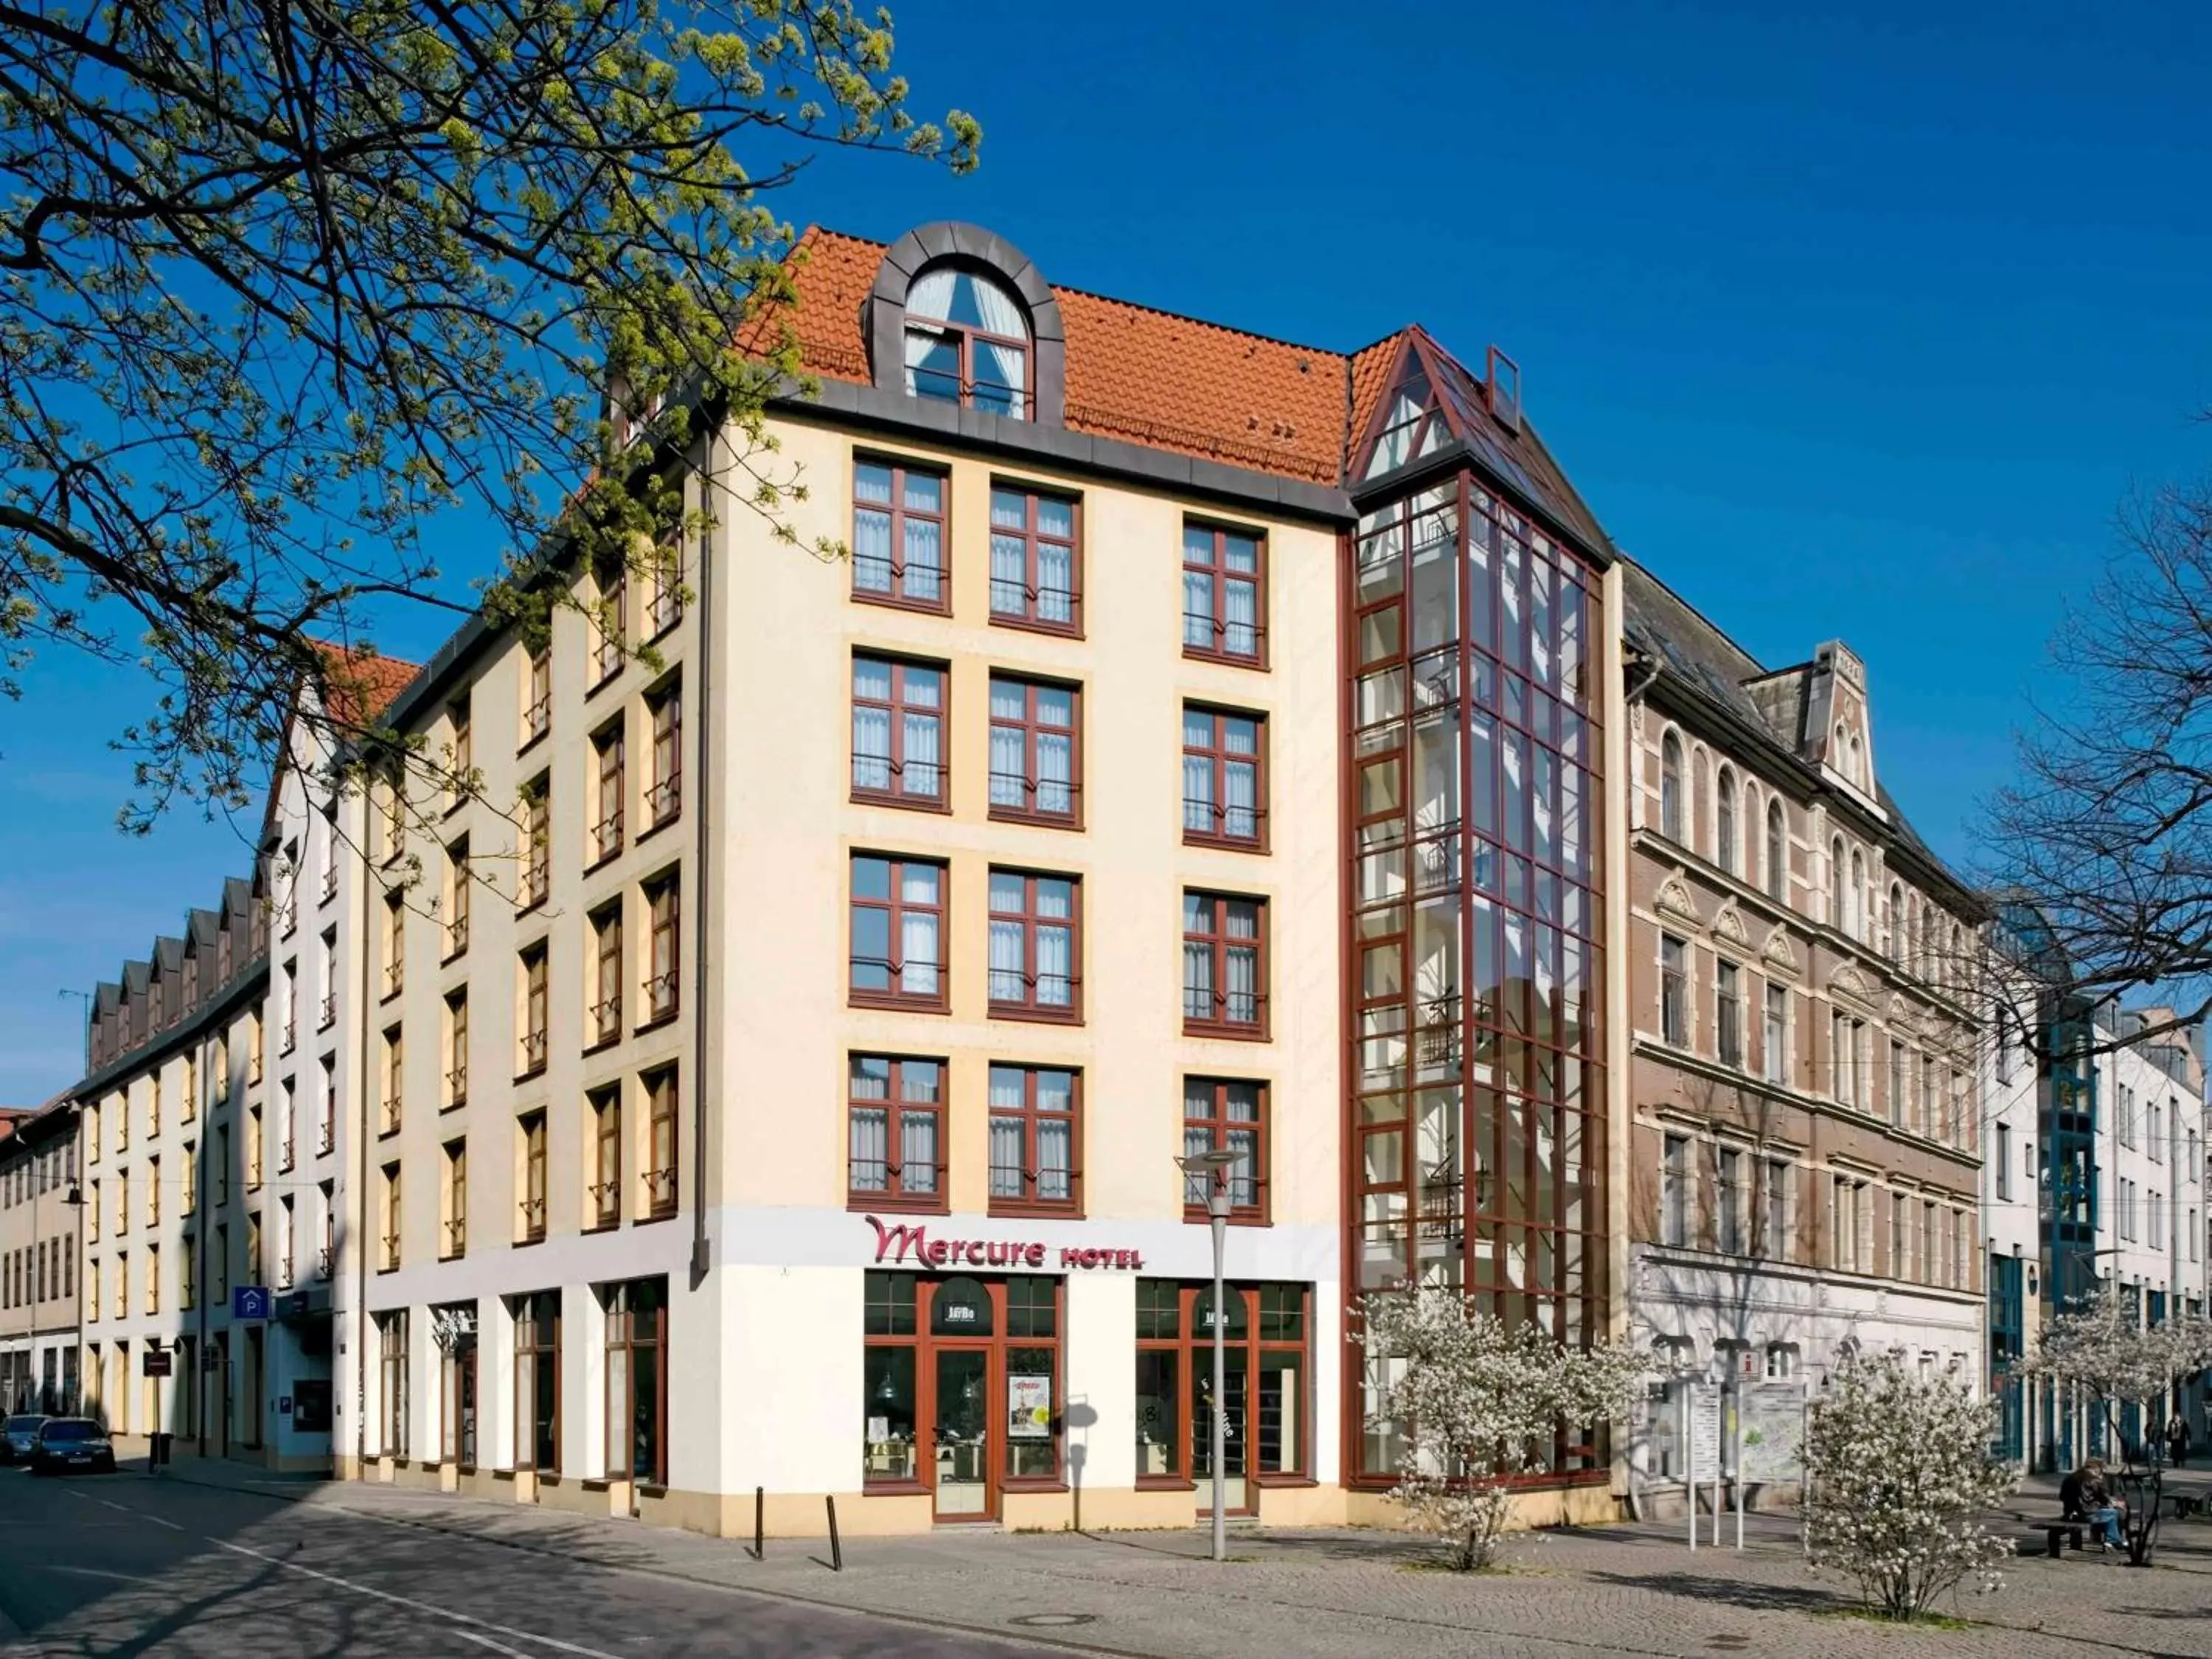 On site, Property Building in Mercure Hotel Erfurt Altstadt